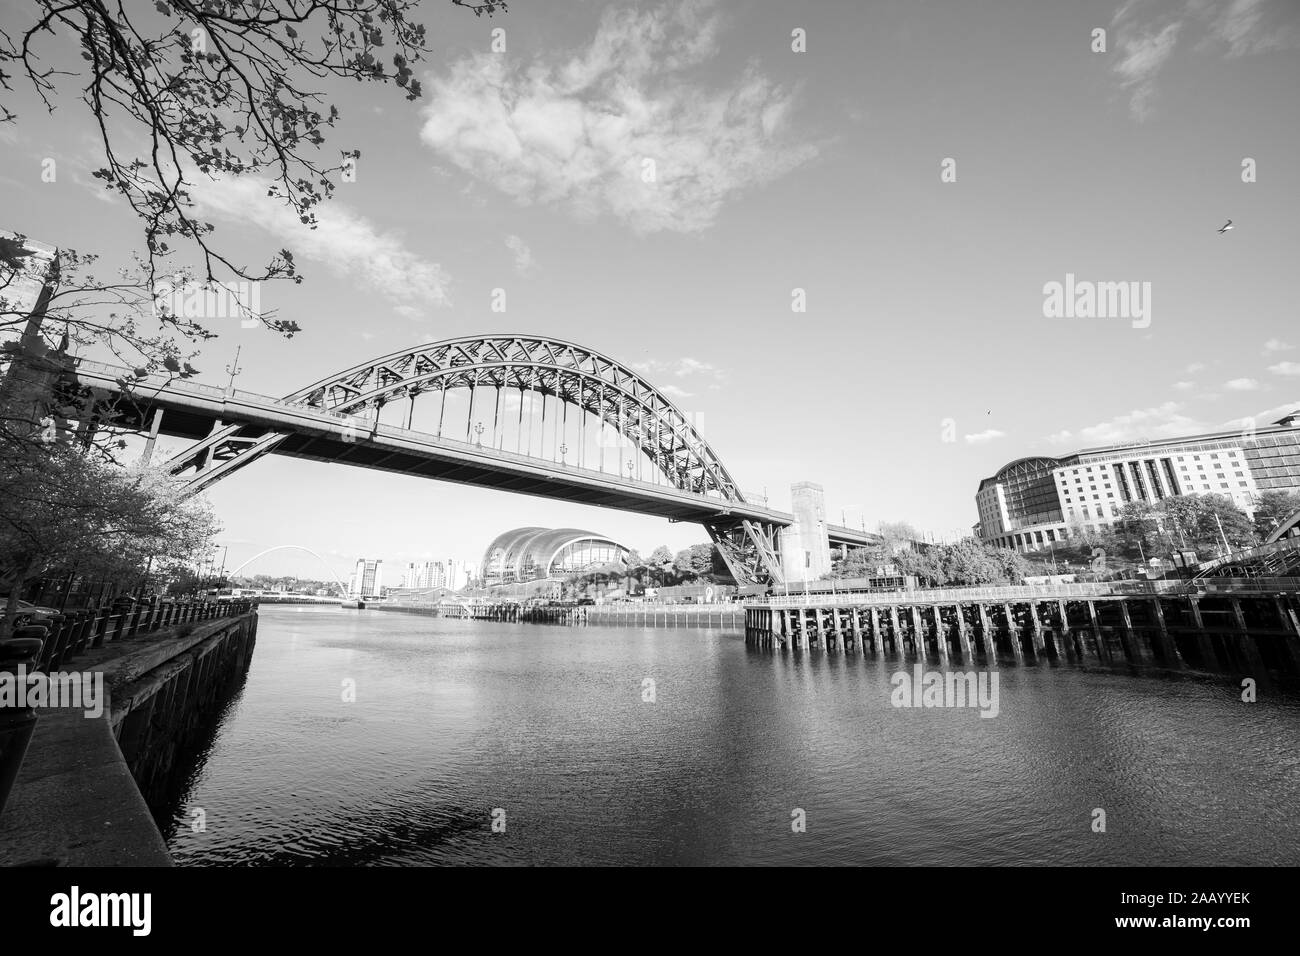 Newcastle, UK - 12. Mai 2019: Newcastle berühmt Tyne Bridge an einem sonnigen Tag mit Fluffy Clouds in Schwarz und Weiß Stockfoto